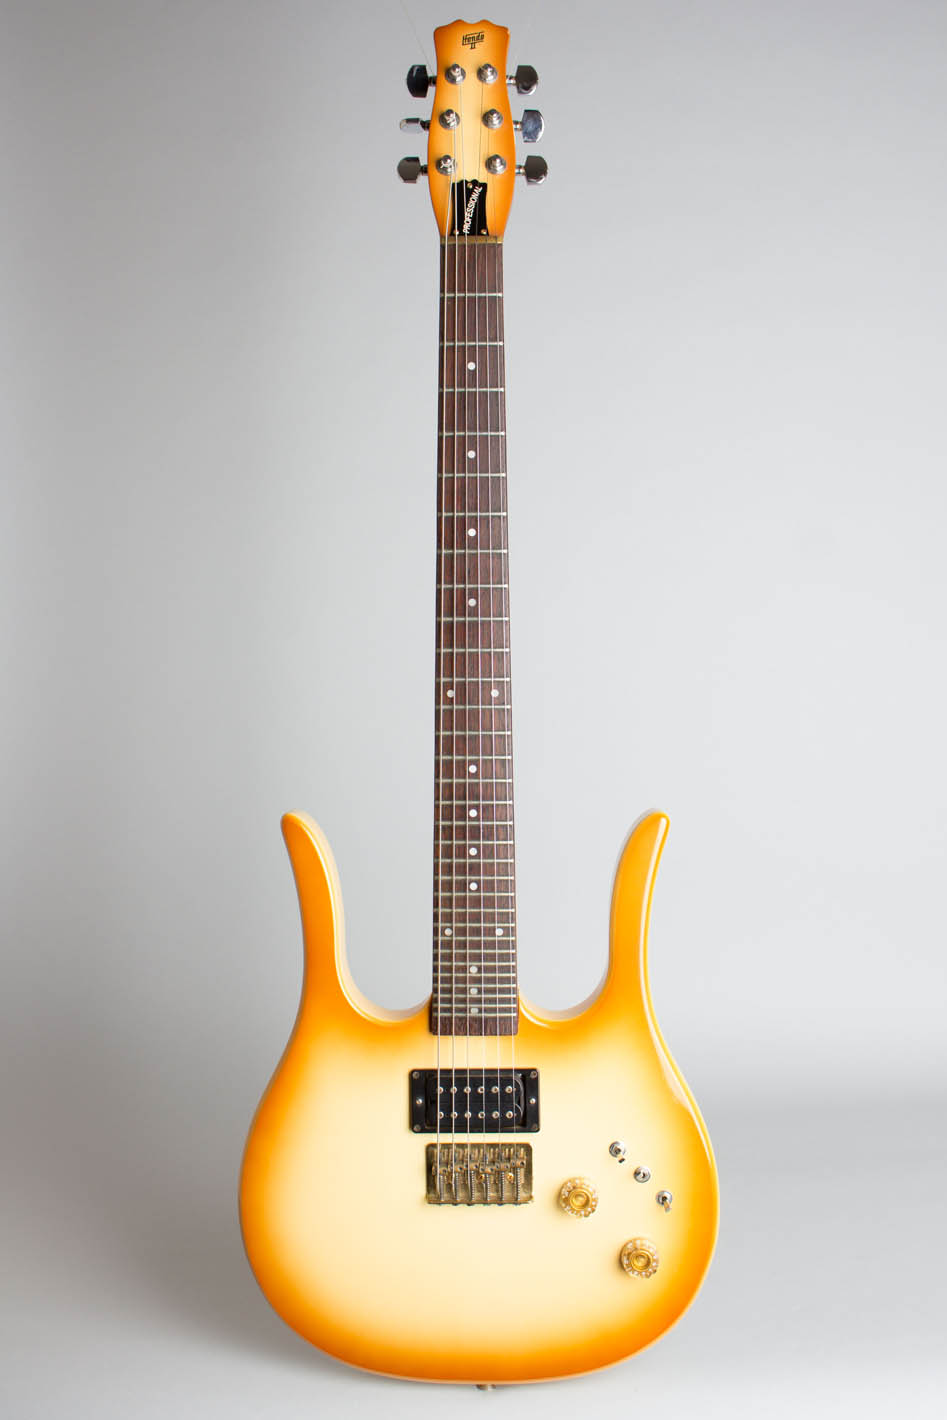 hondo guitar serial number